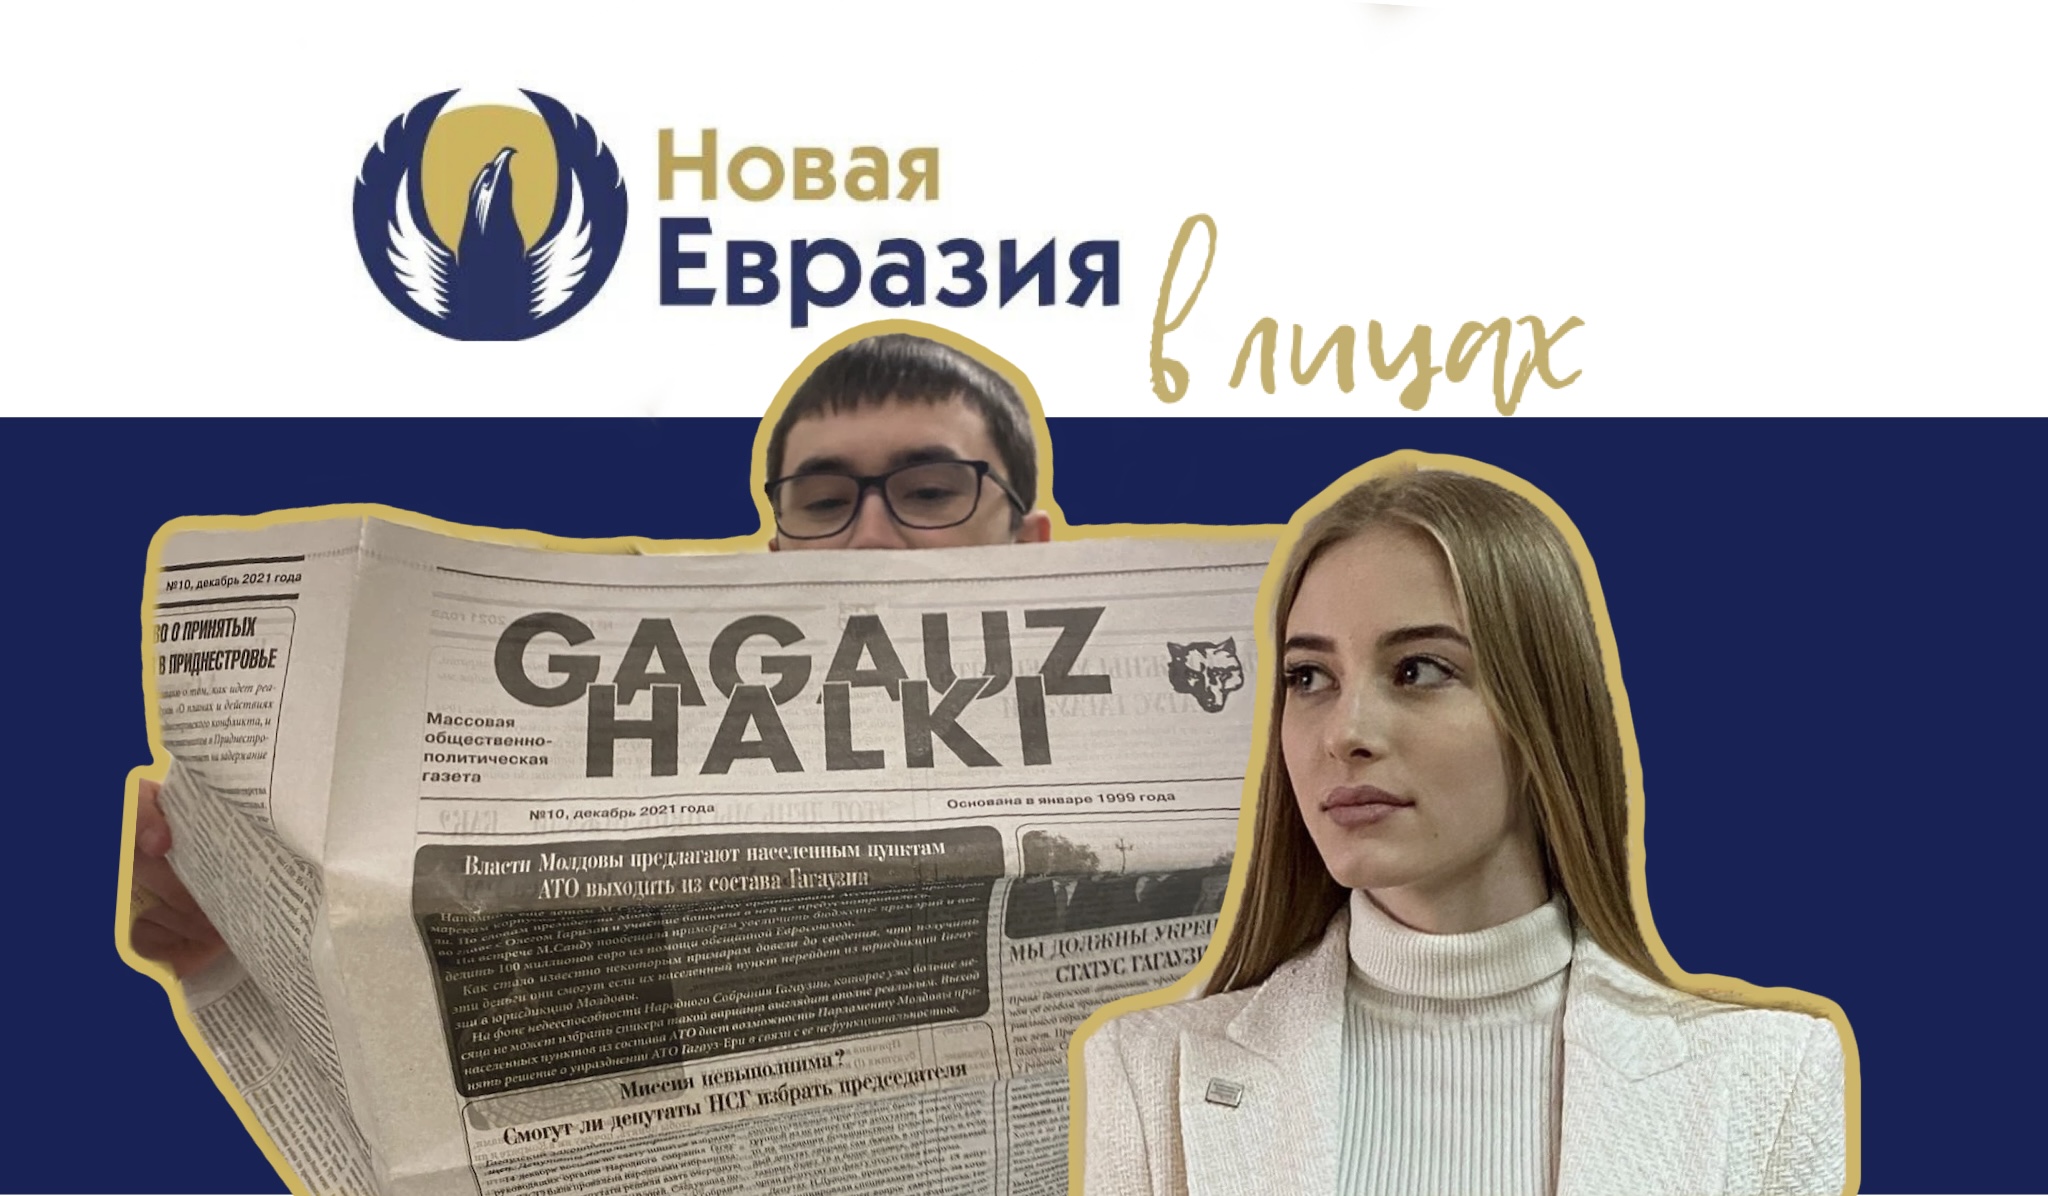 Гагаузский интерес к Евразии | Новая Евразия в лицах